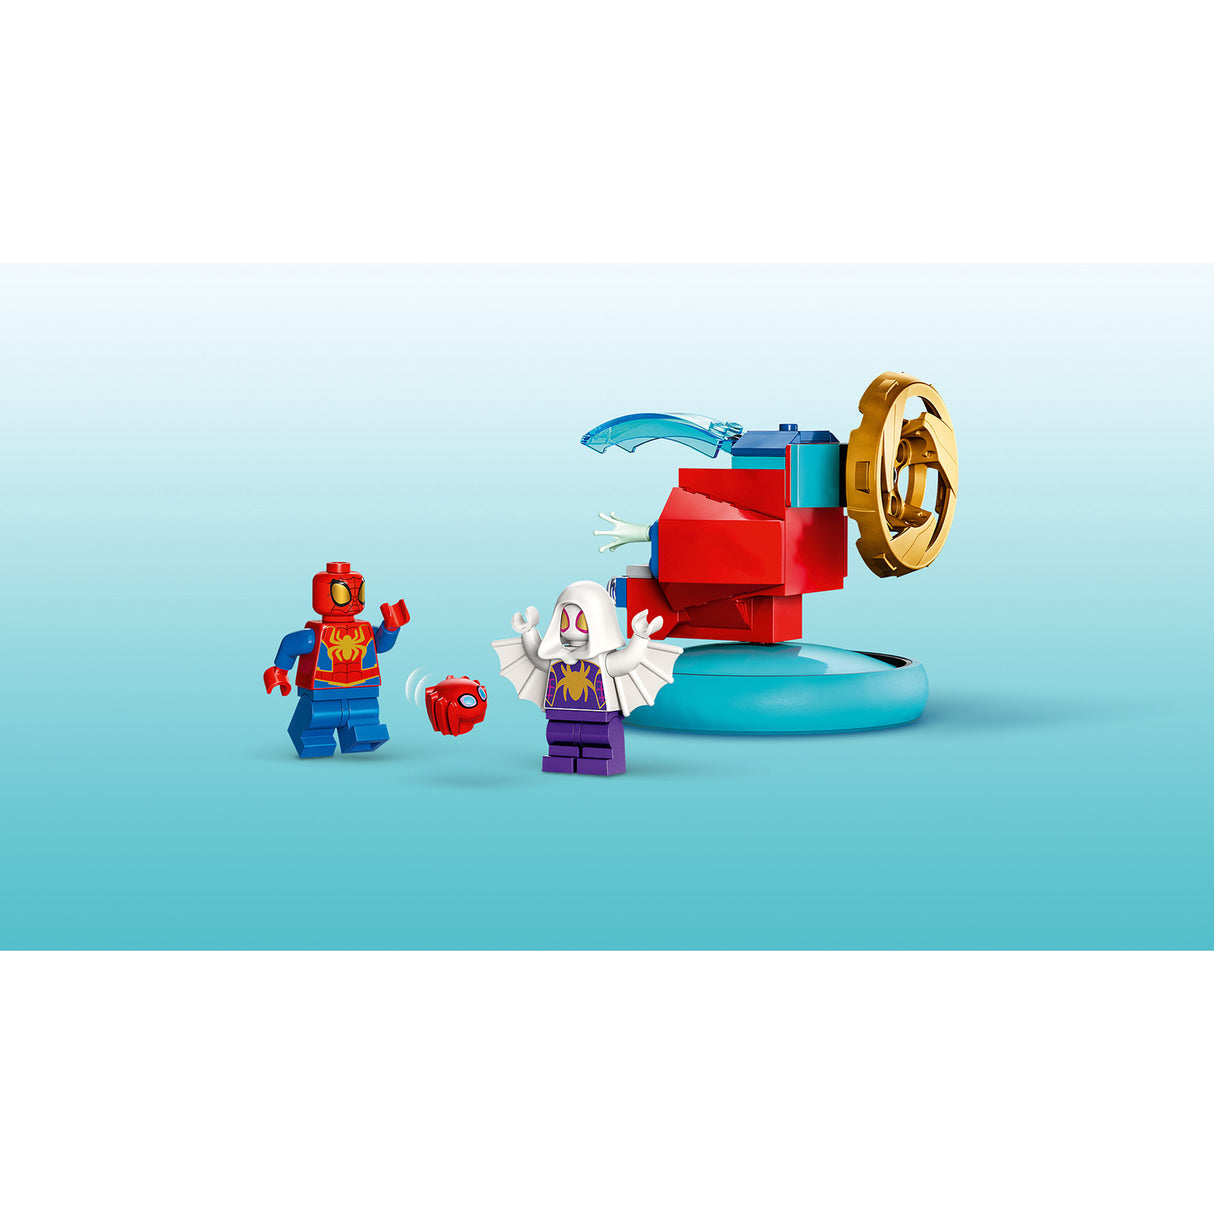 LEGO Marvel Spidey Vs. Green Goblin 10793, (84-Pieces)